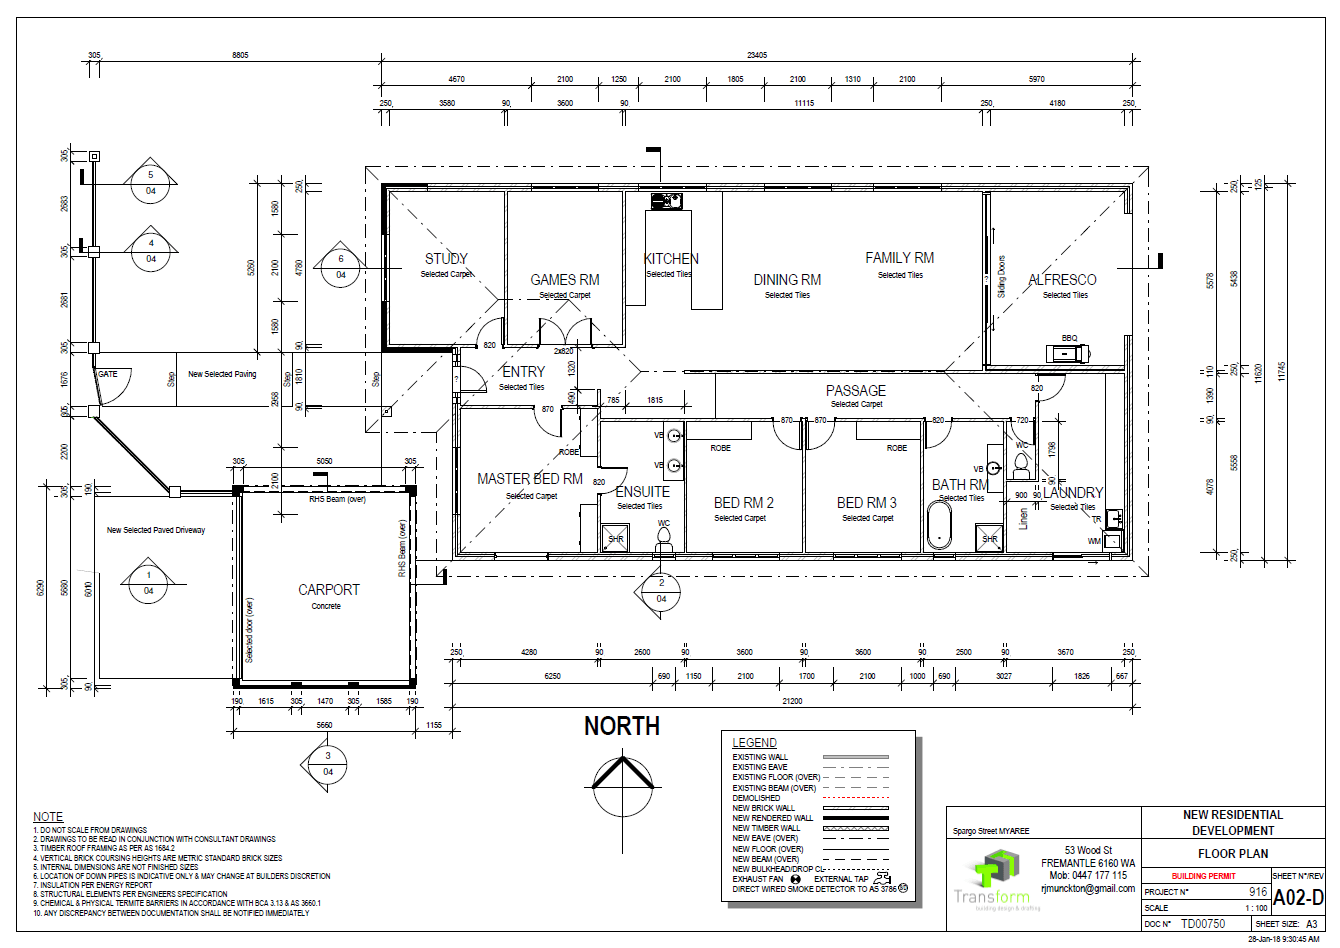 3. Floor Plan (5)